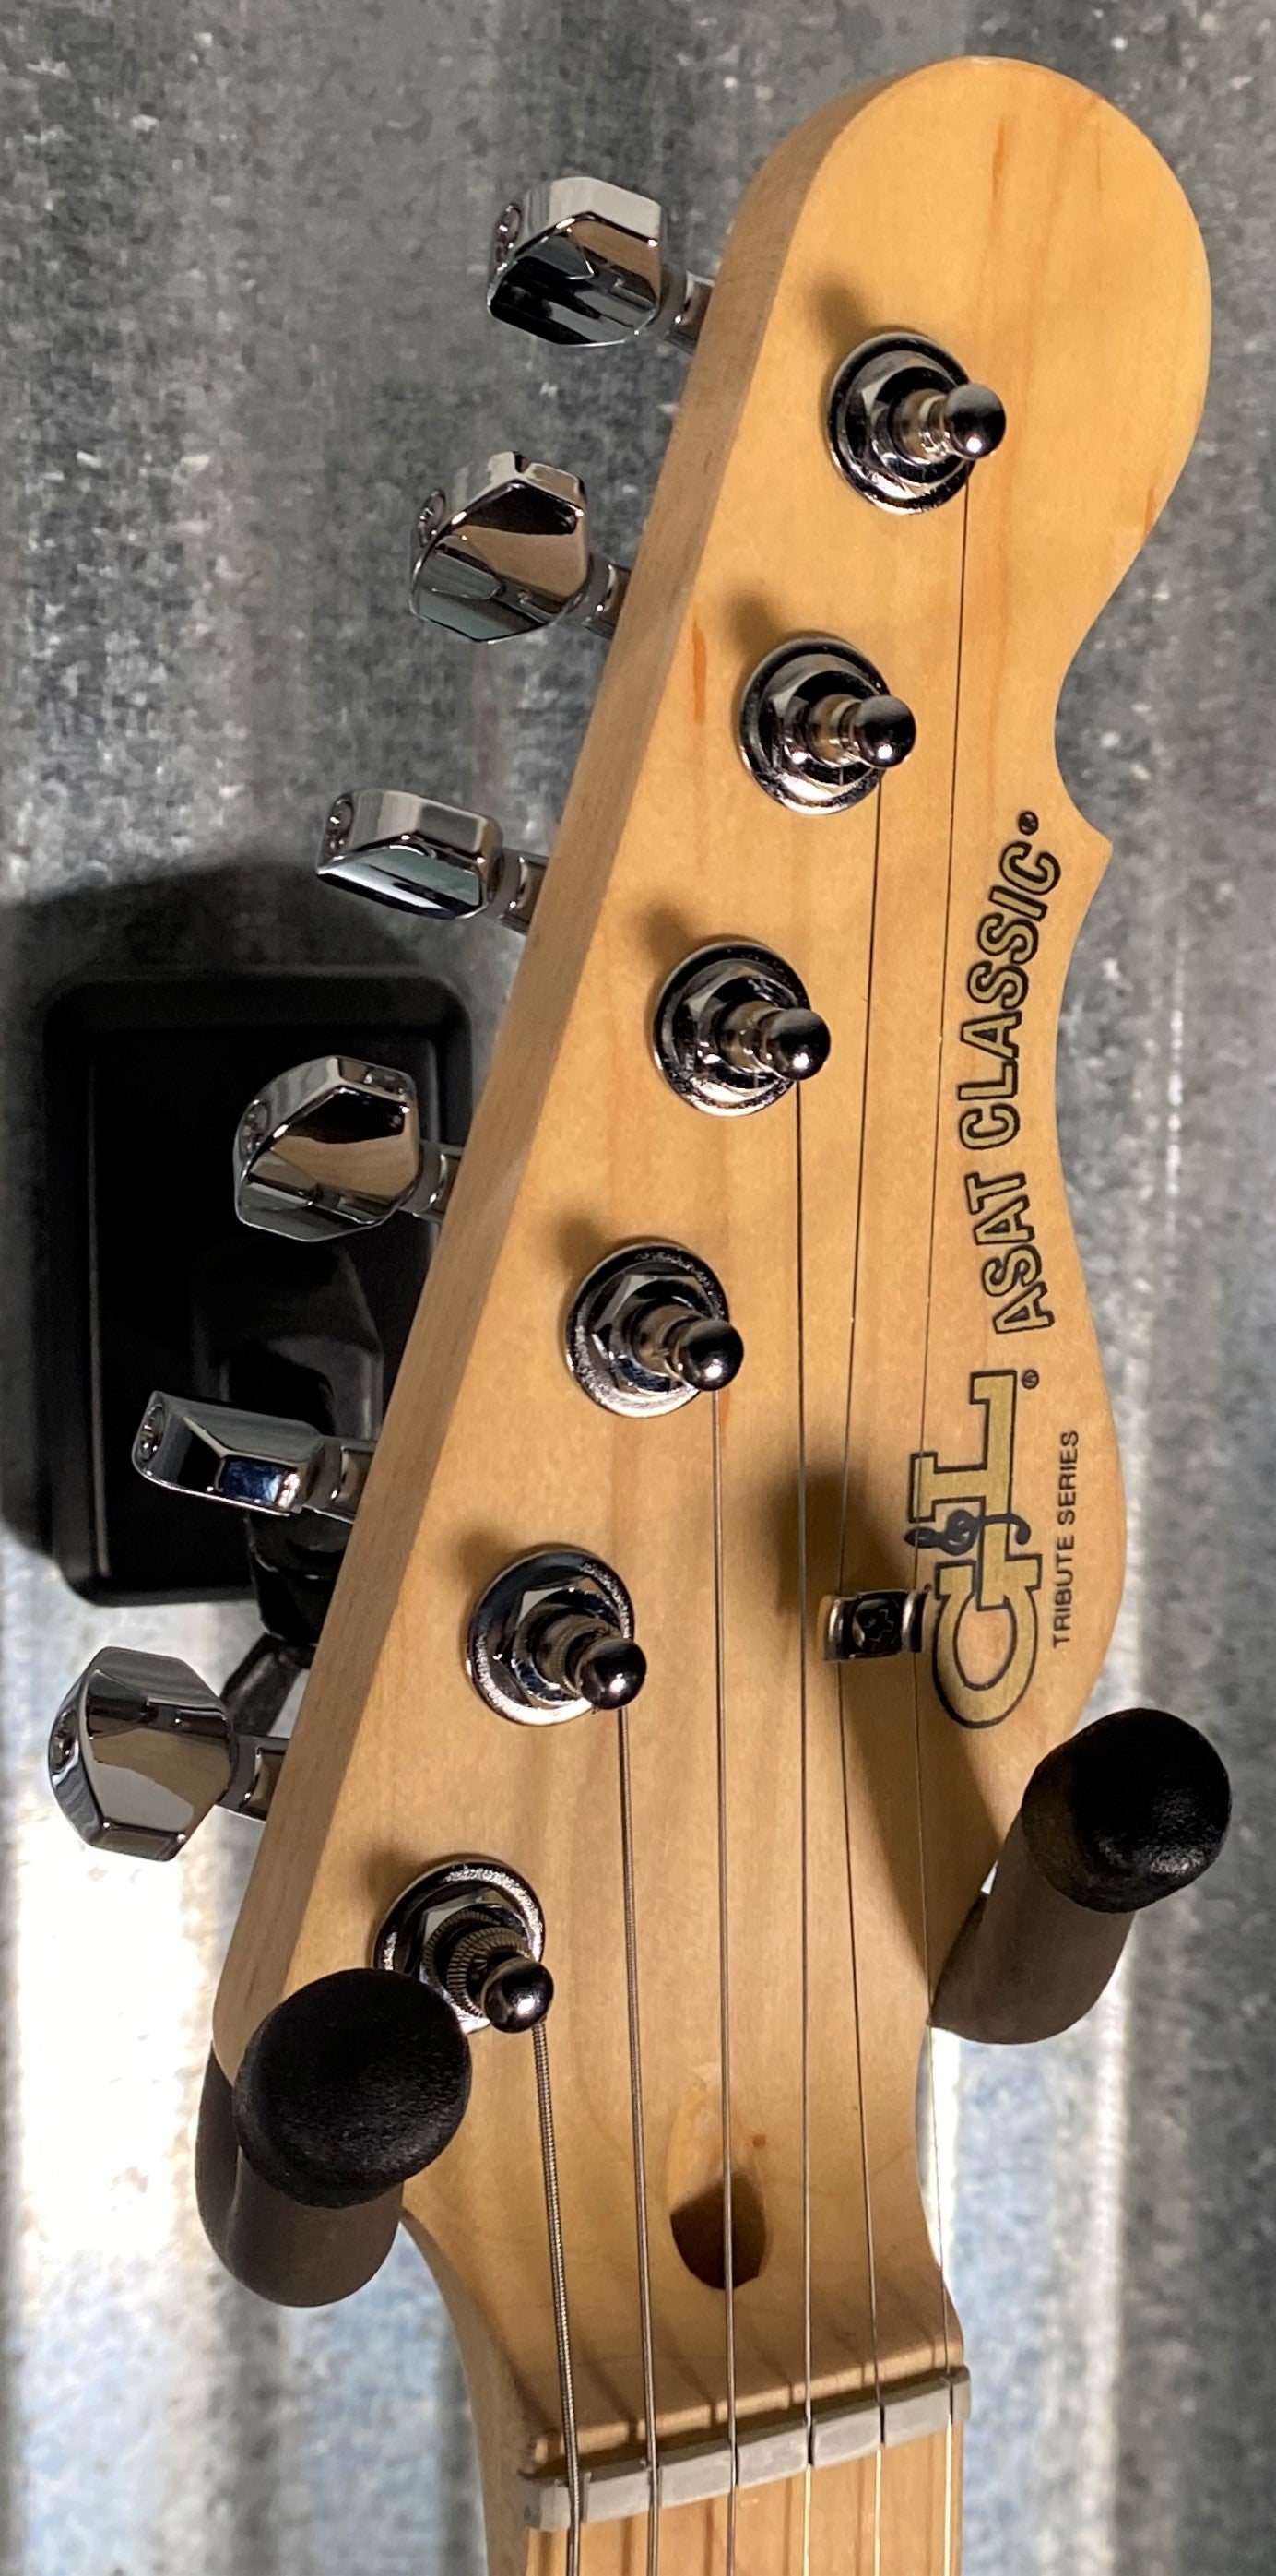 G&L Tribute ASAT Classic Bluesboy Mint Green Guitar #7138 Used